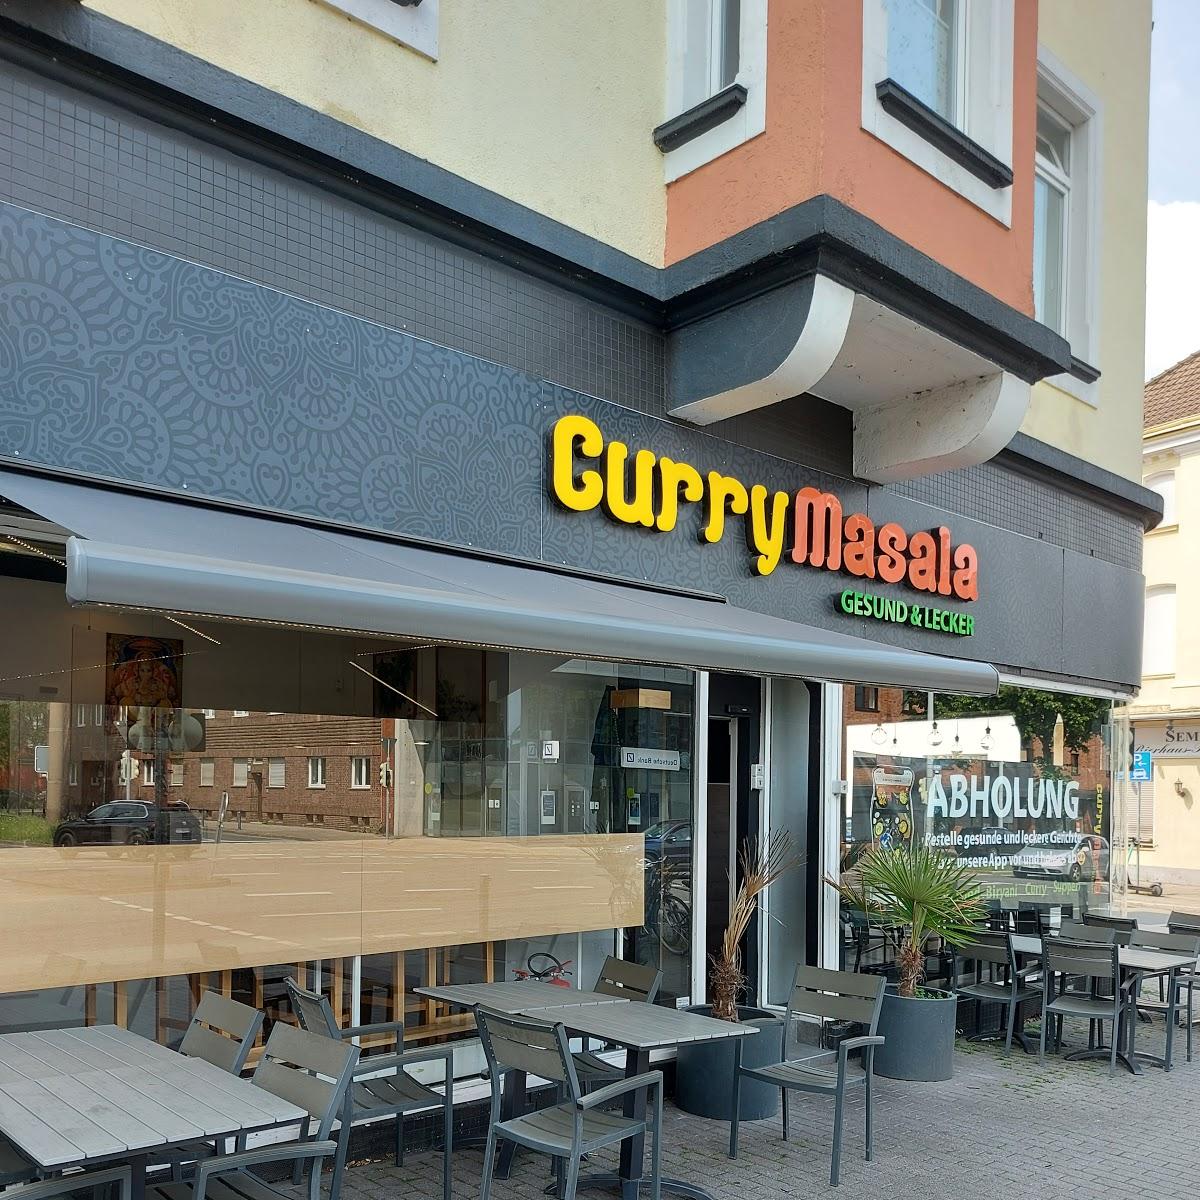 Restaurant "Curry Masala" in  Dortmund